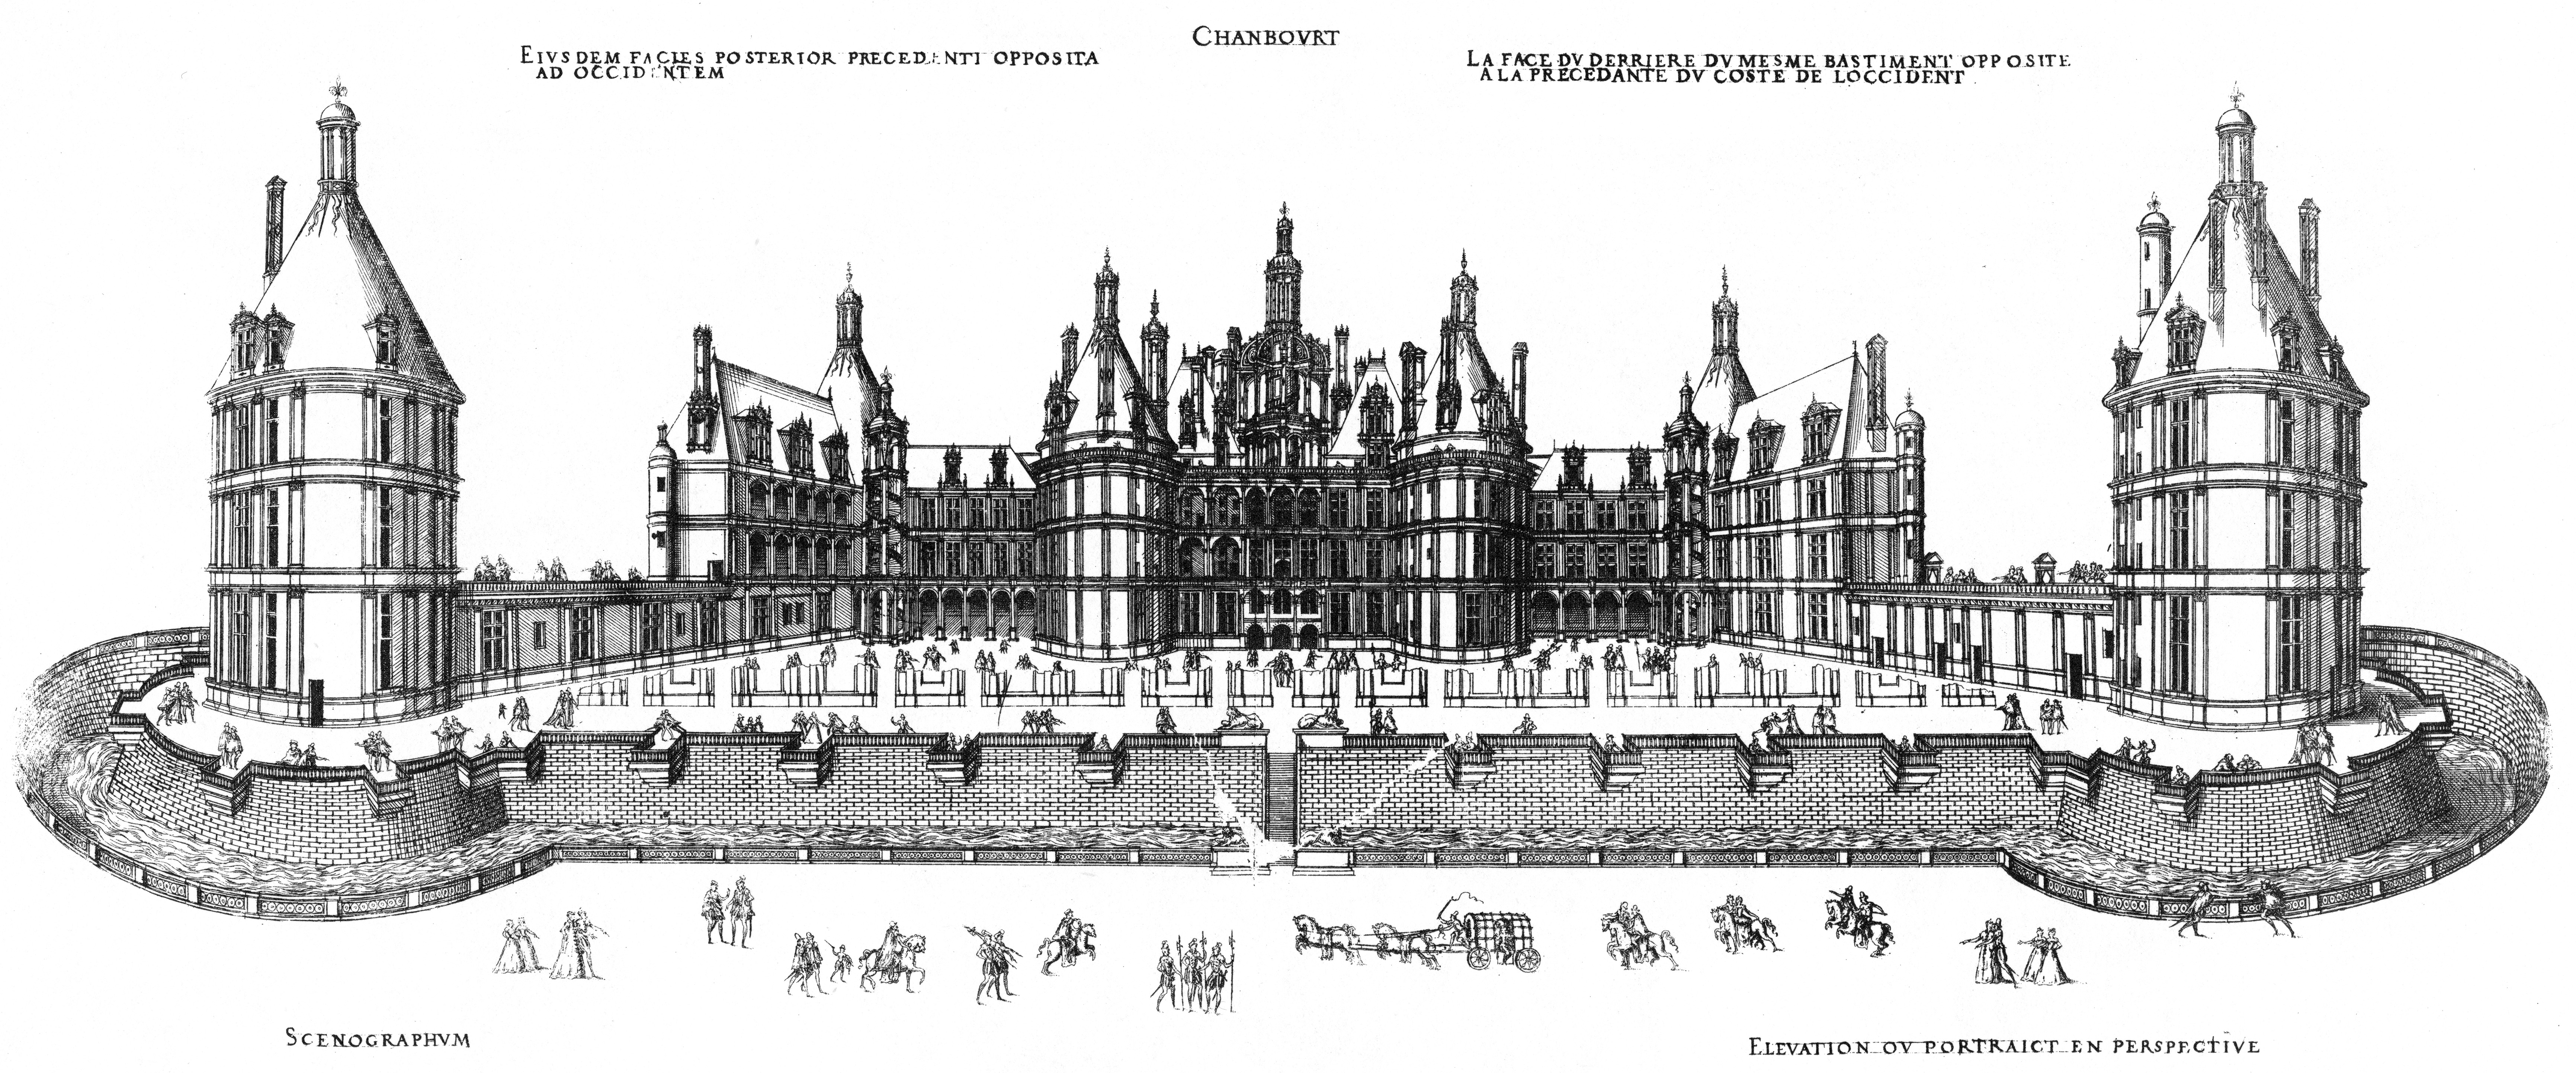 Le chantier de Chambord en 1522 - Rihvage